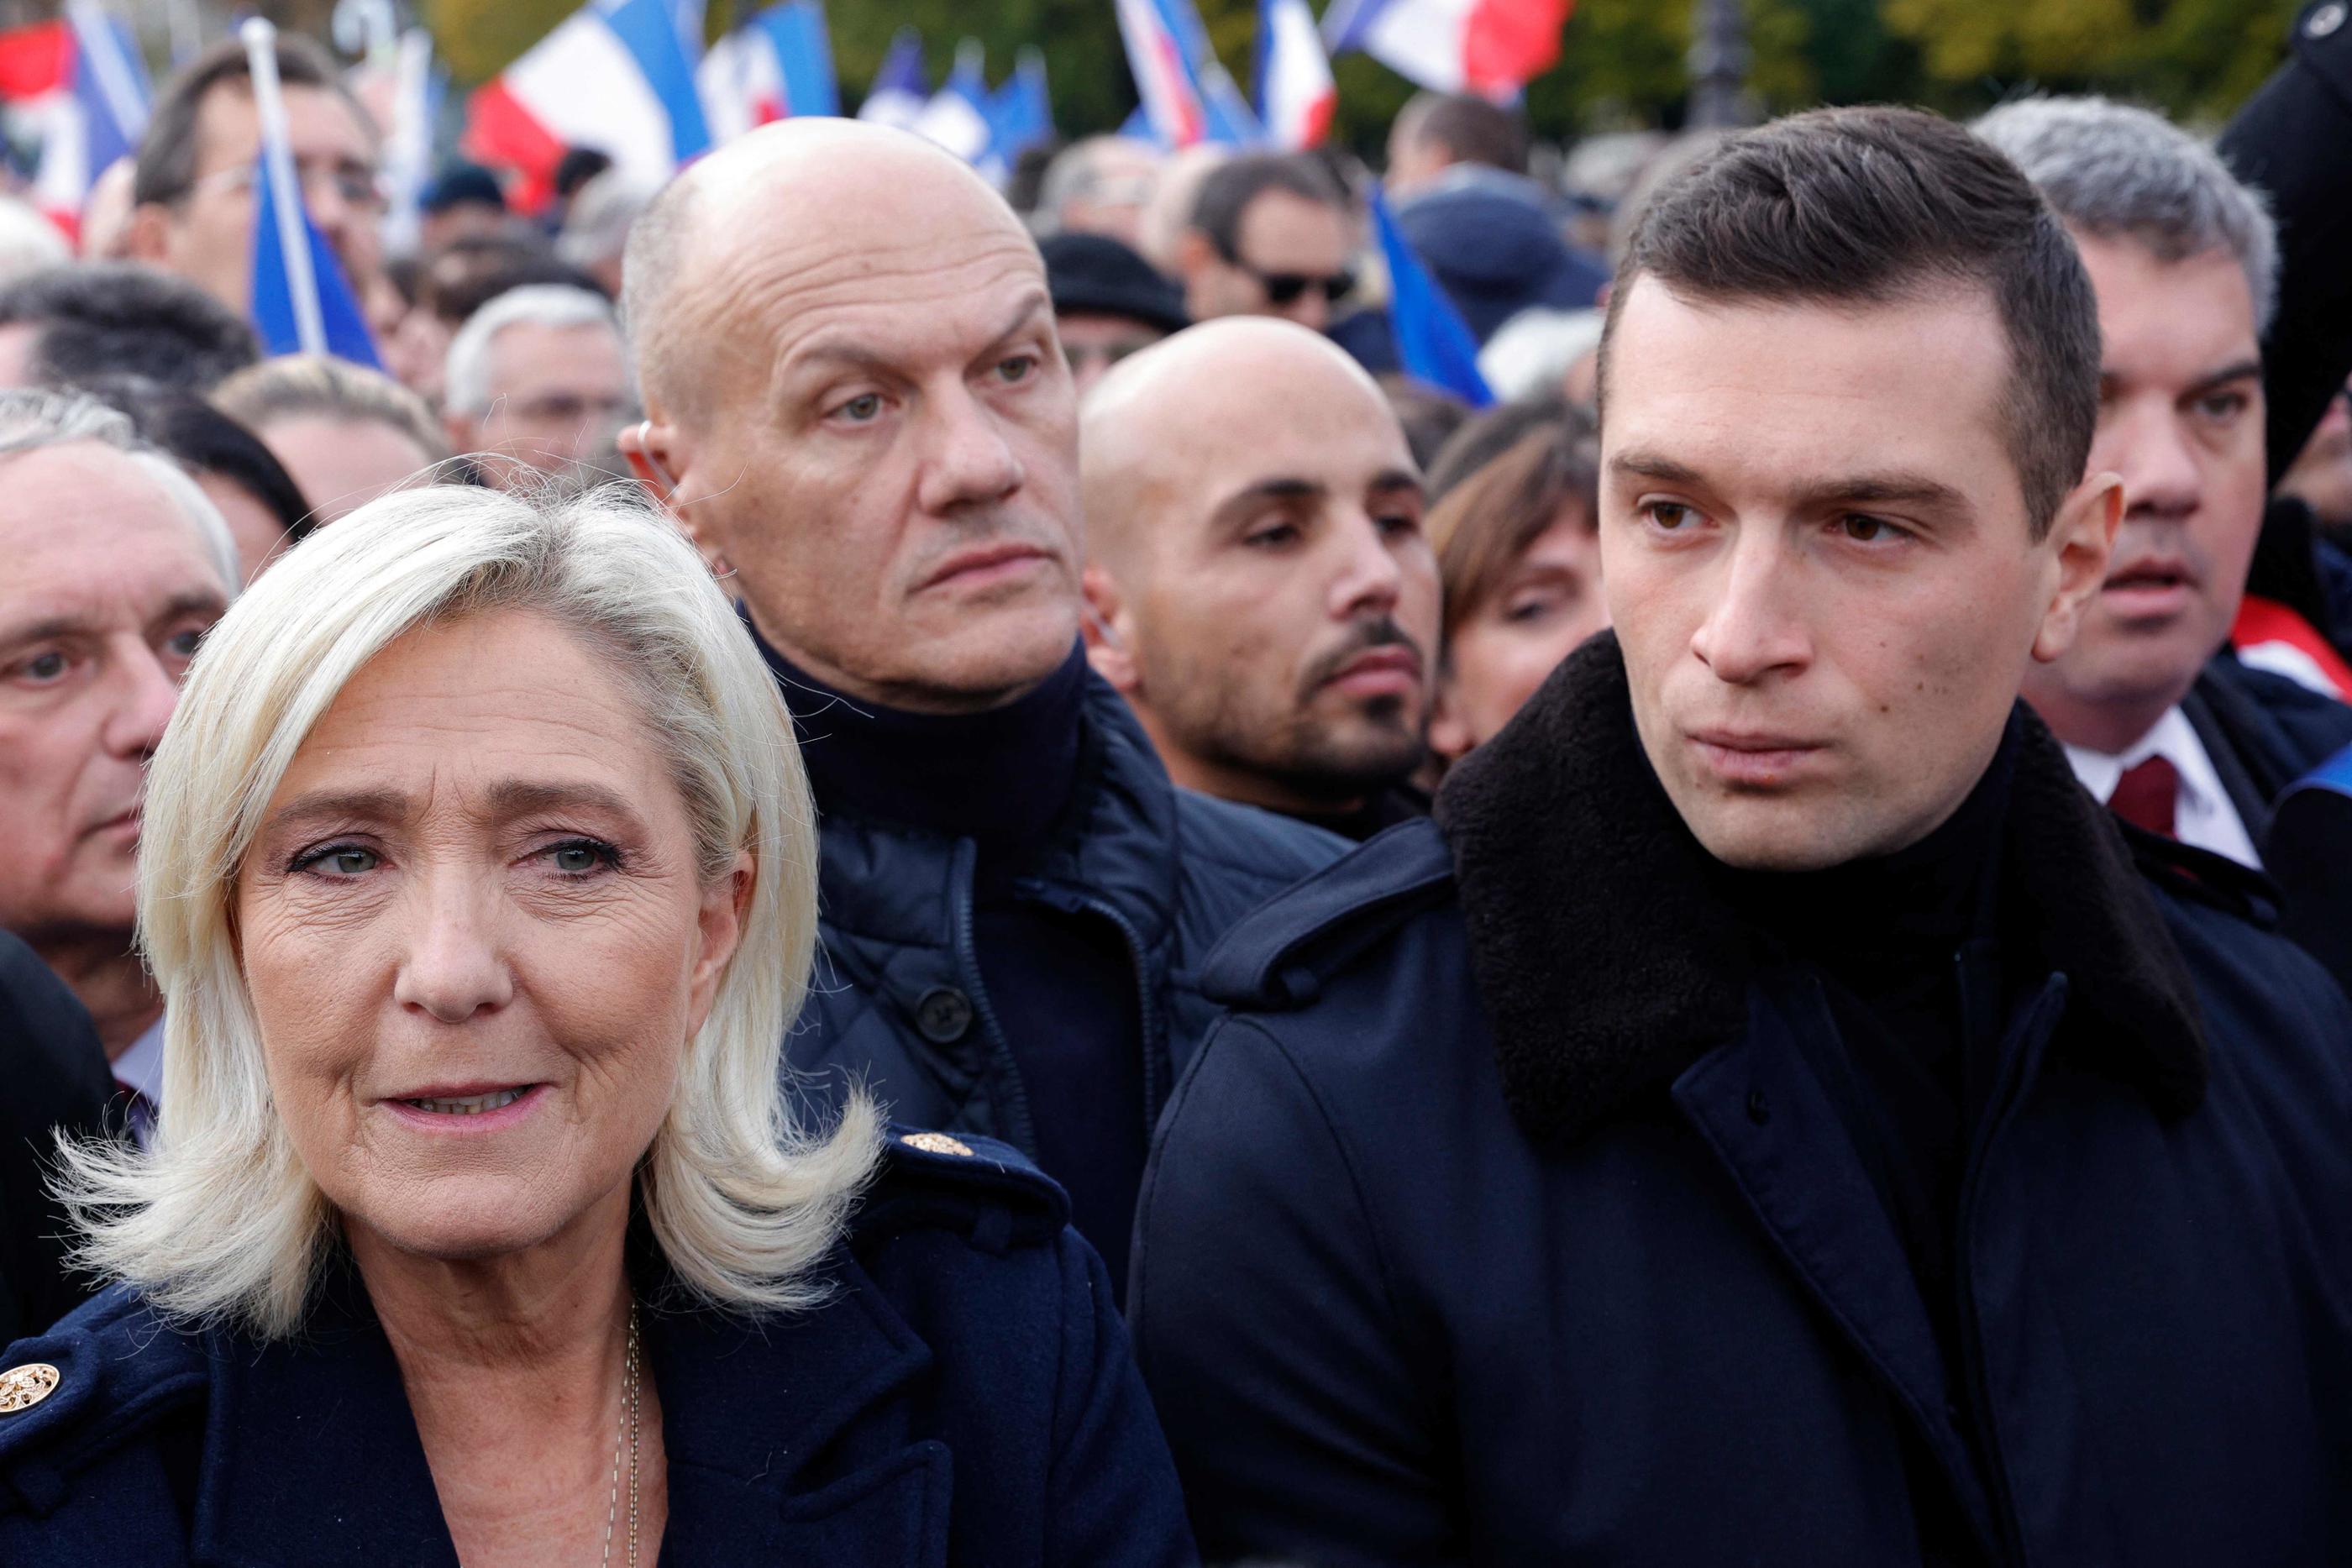 Marine Le Pen et Jordan Bardella ont fraîchement accueilli l'arrivée de Gabriel Attal à Matignon. L'ex-ministre de l'Education nationale pourrait être un adversaire de poids pour le RN en vue notamment des européennes. AFP/Geoffroy Van der Hasselt